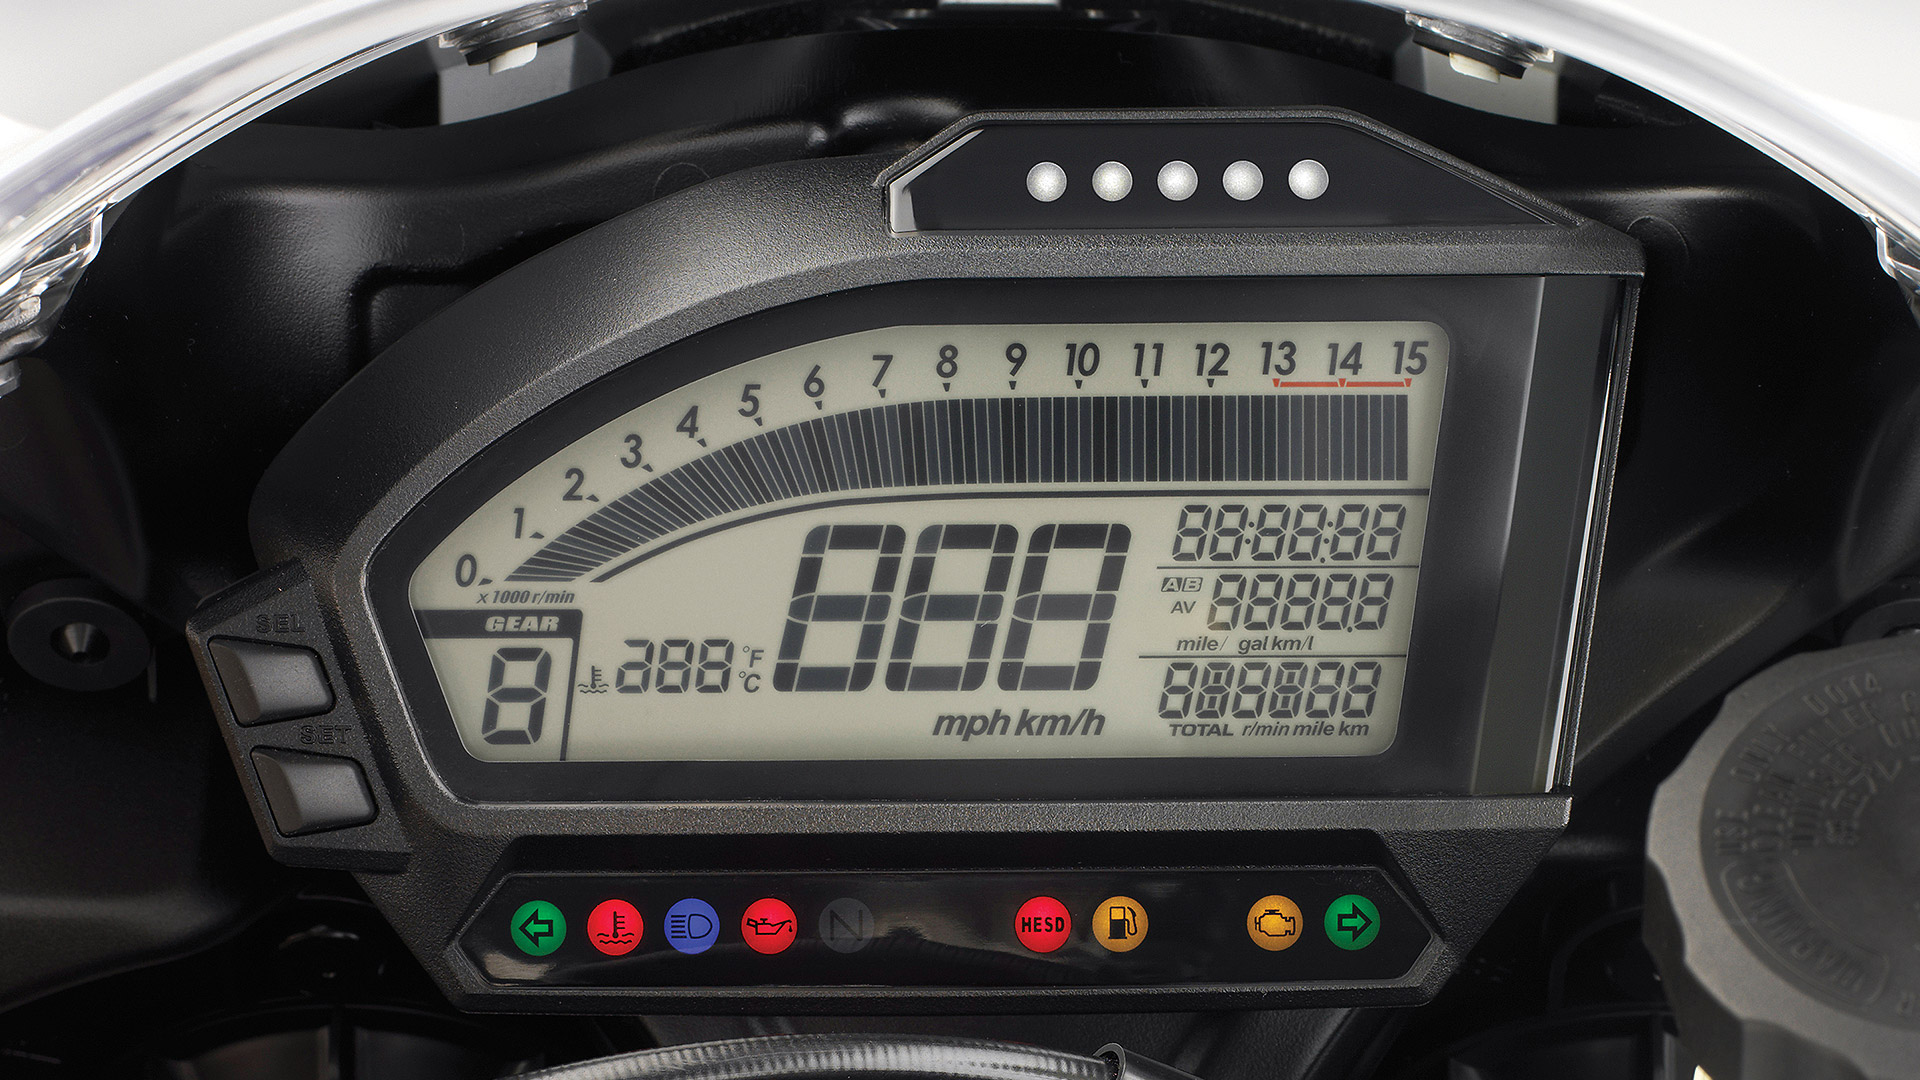 Honda CBR 1000RR 2015 Compare